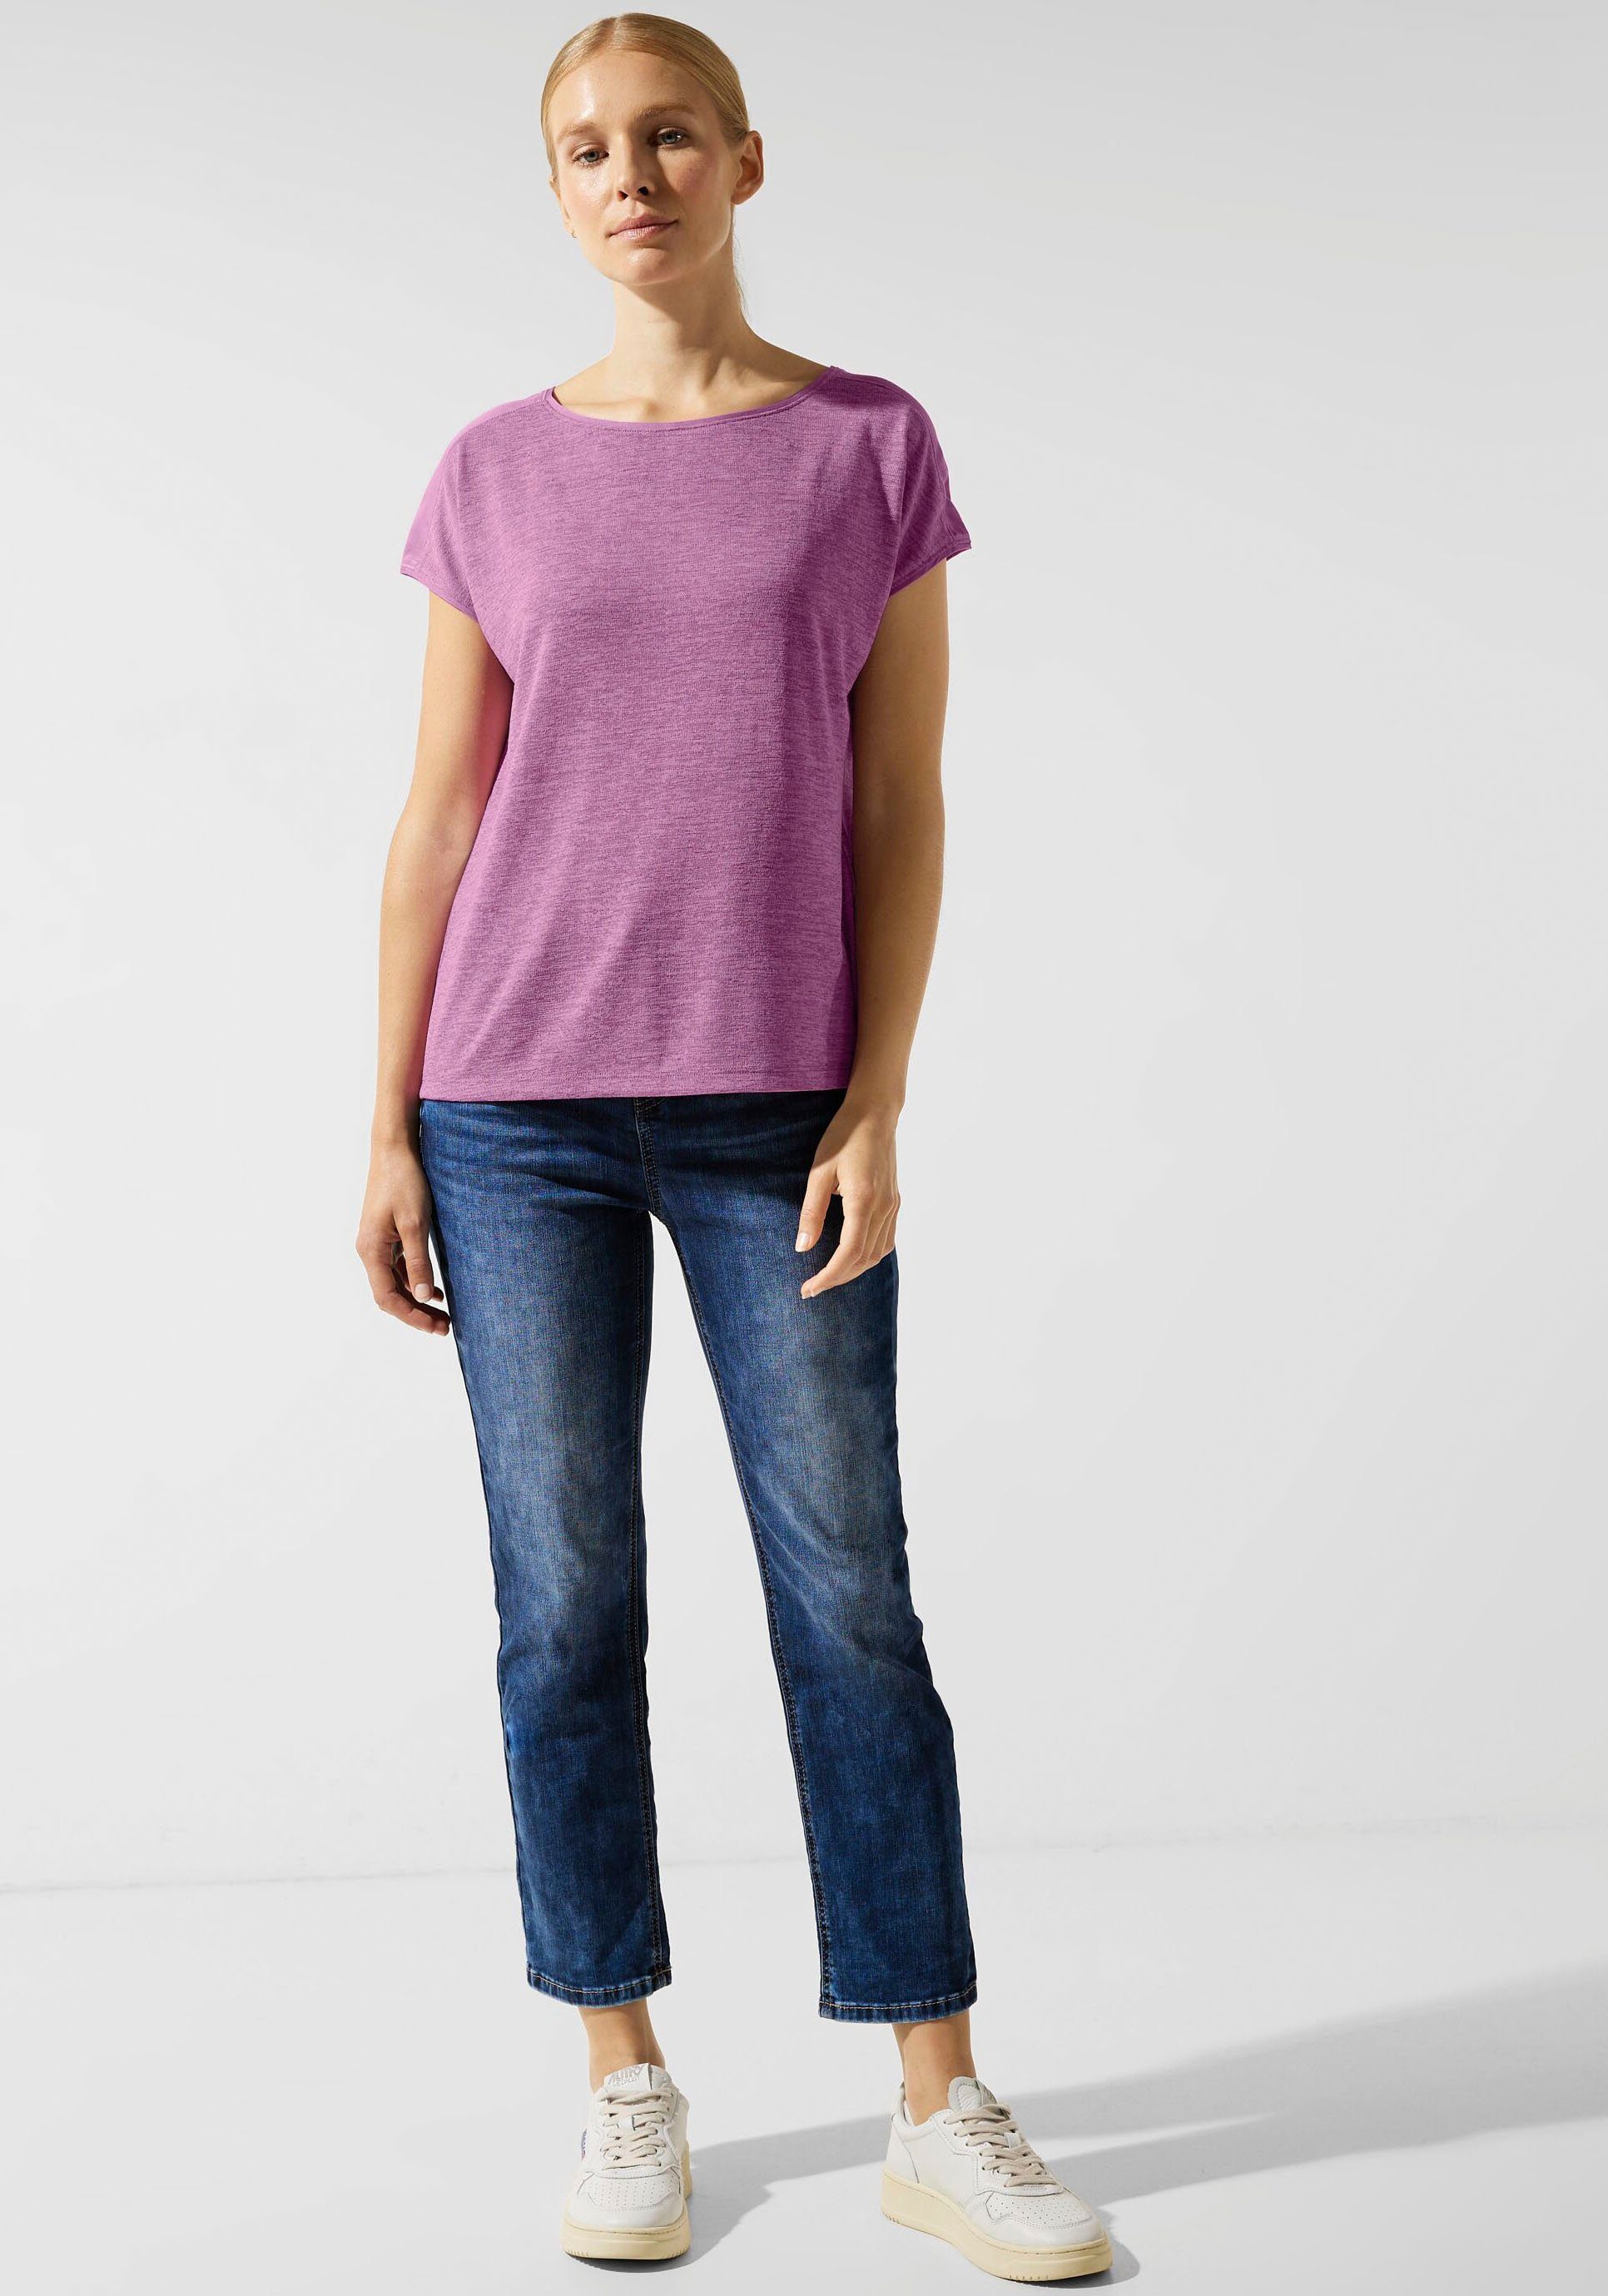 unifarbenen den Schultern meta mit lilac Einsätzen Shirttop STREET ONE an